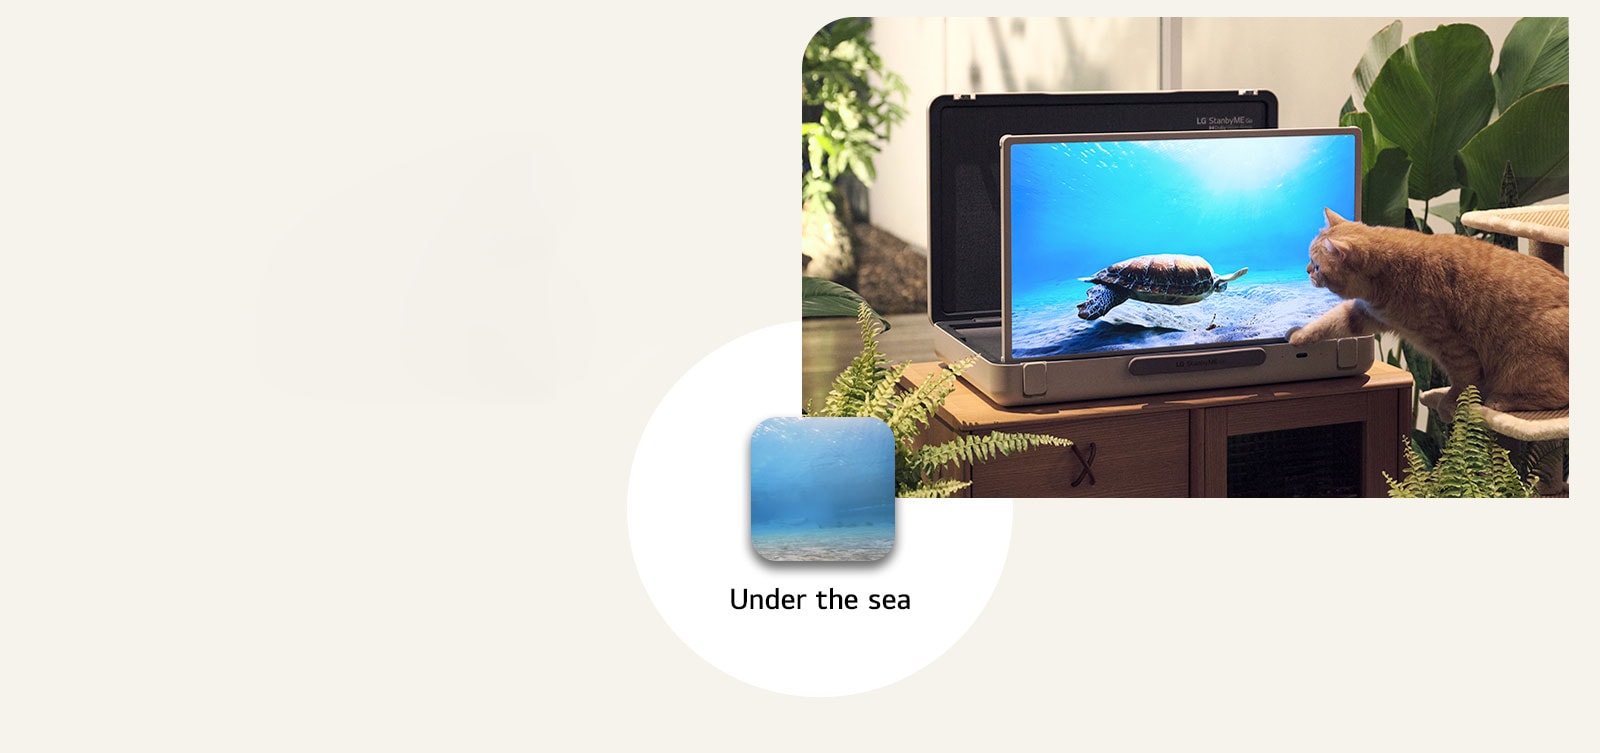 شاشة The LG StanbyME Go موضوعة في الحديقة وتعرض الشاشة مقطع under the sea. أمام الشاشة، تجلس قطة على كرسي، وتحاول الإمساك بسلحفاة على الشاشة.